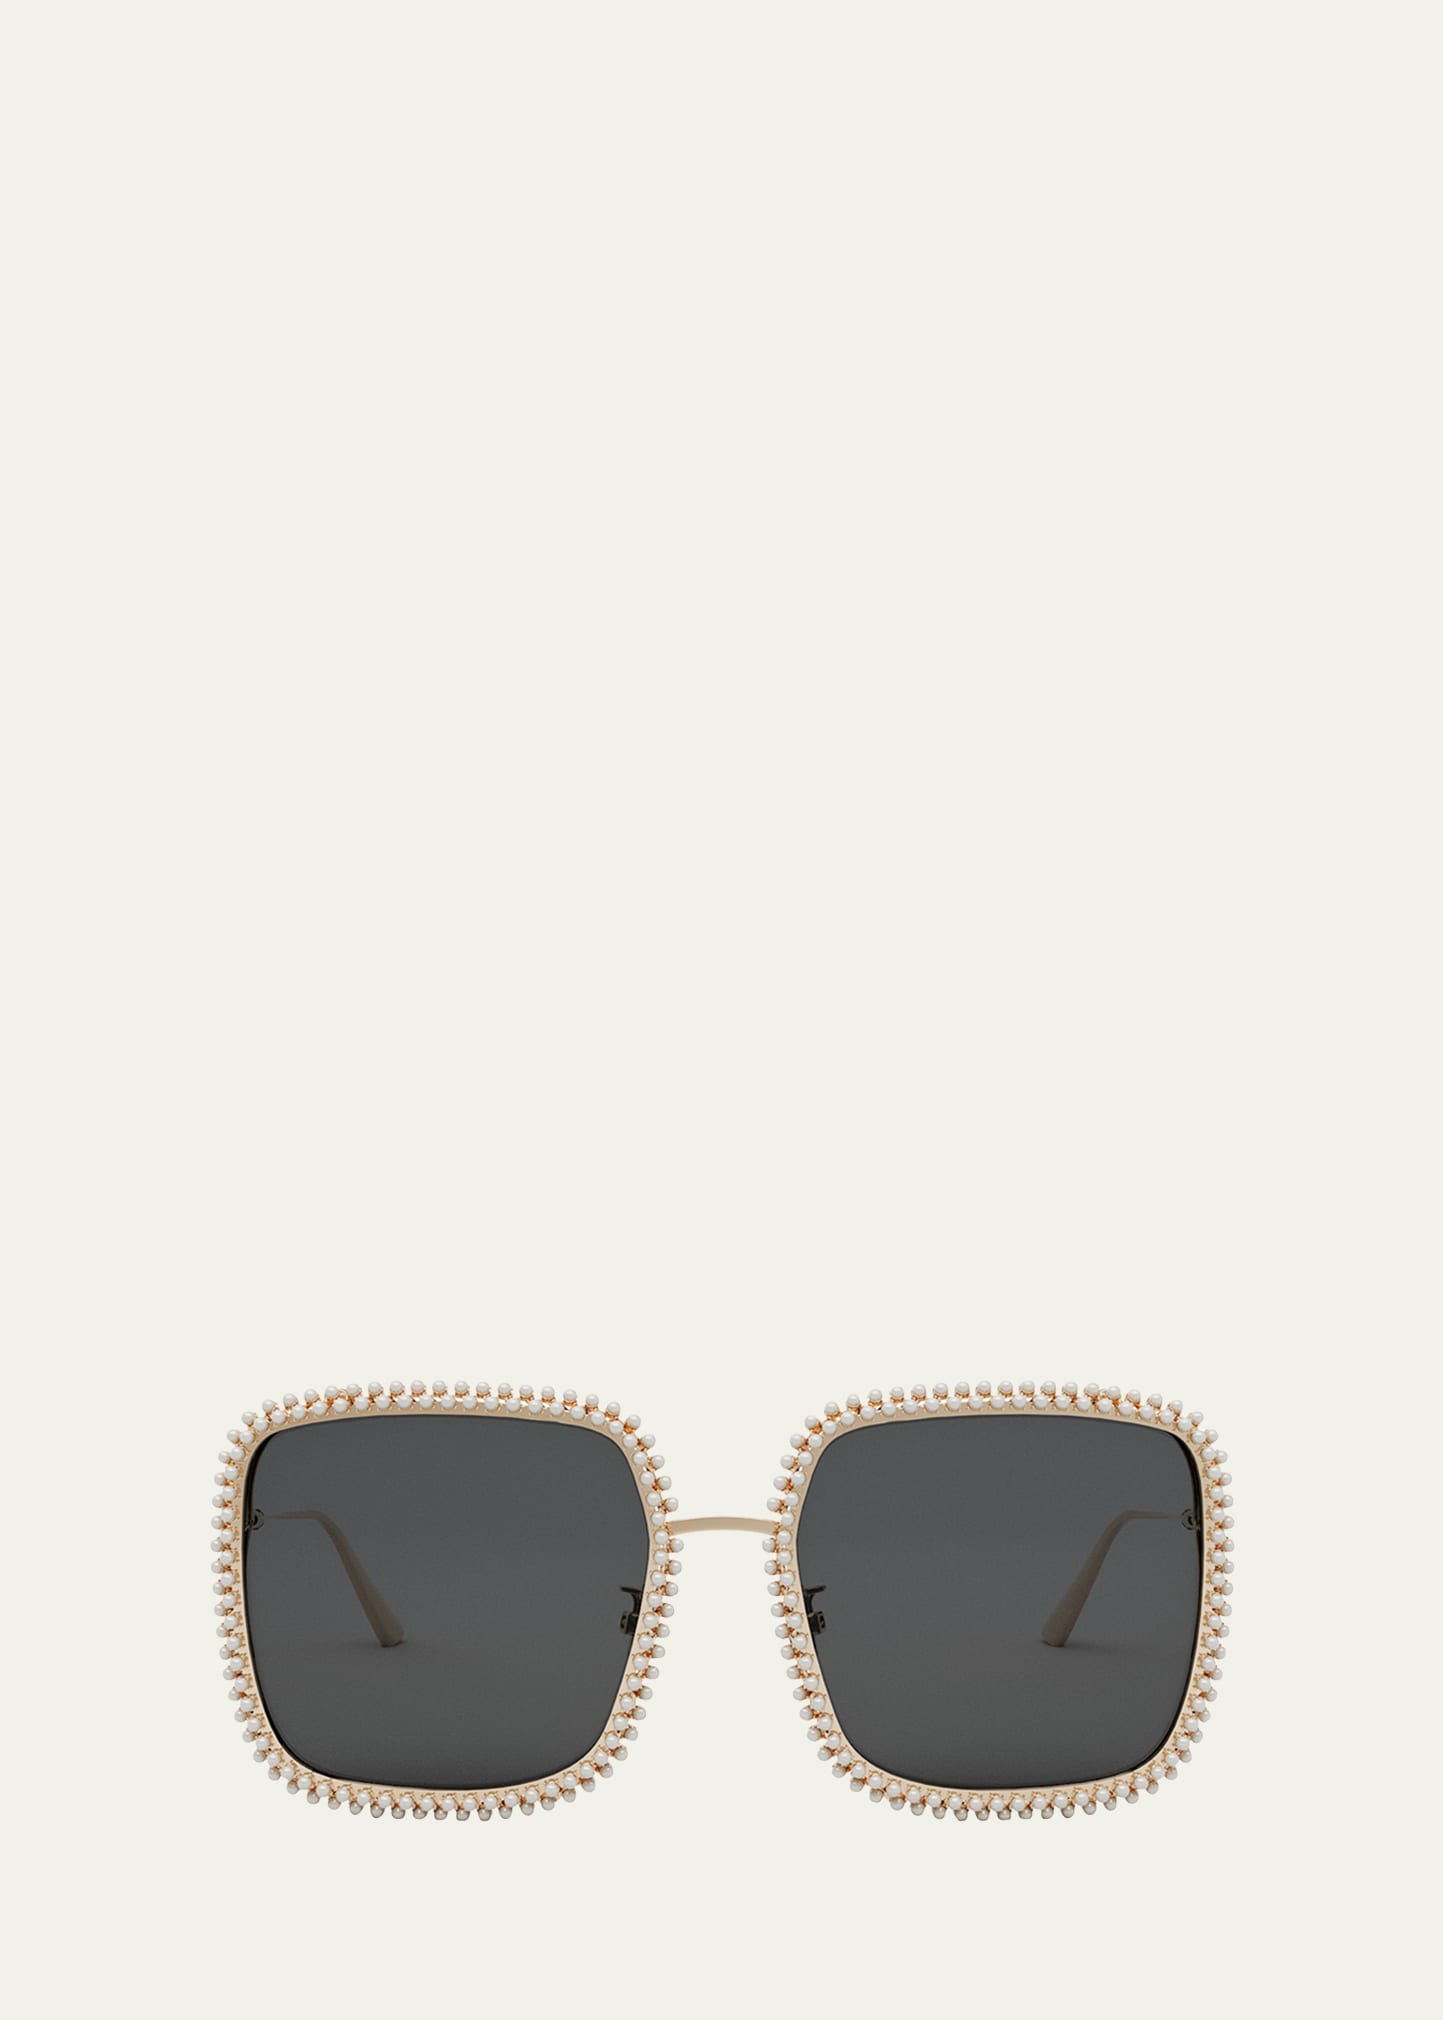 Dior S2u Square Sunglasses, 59mm In White/gray Solid